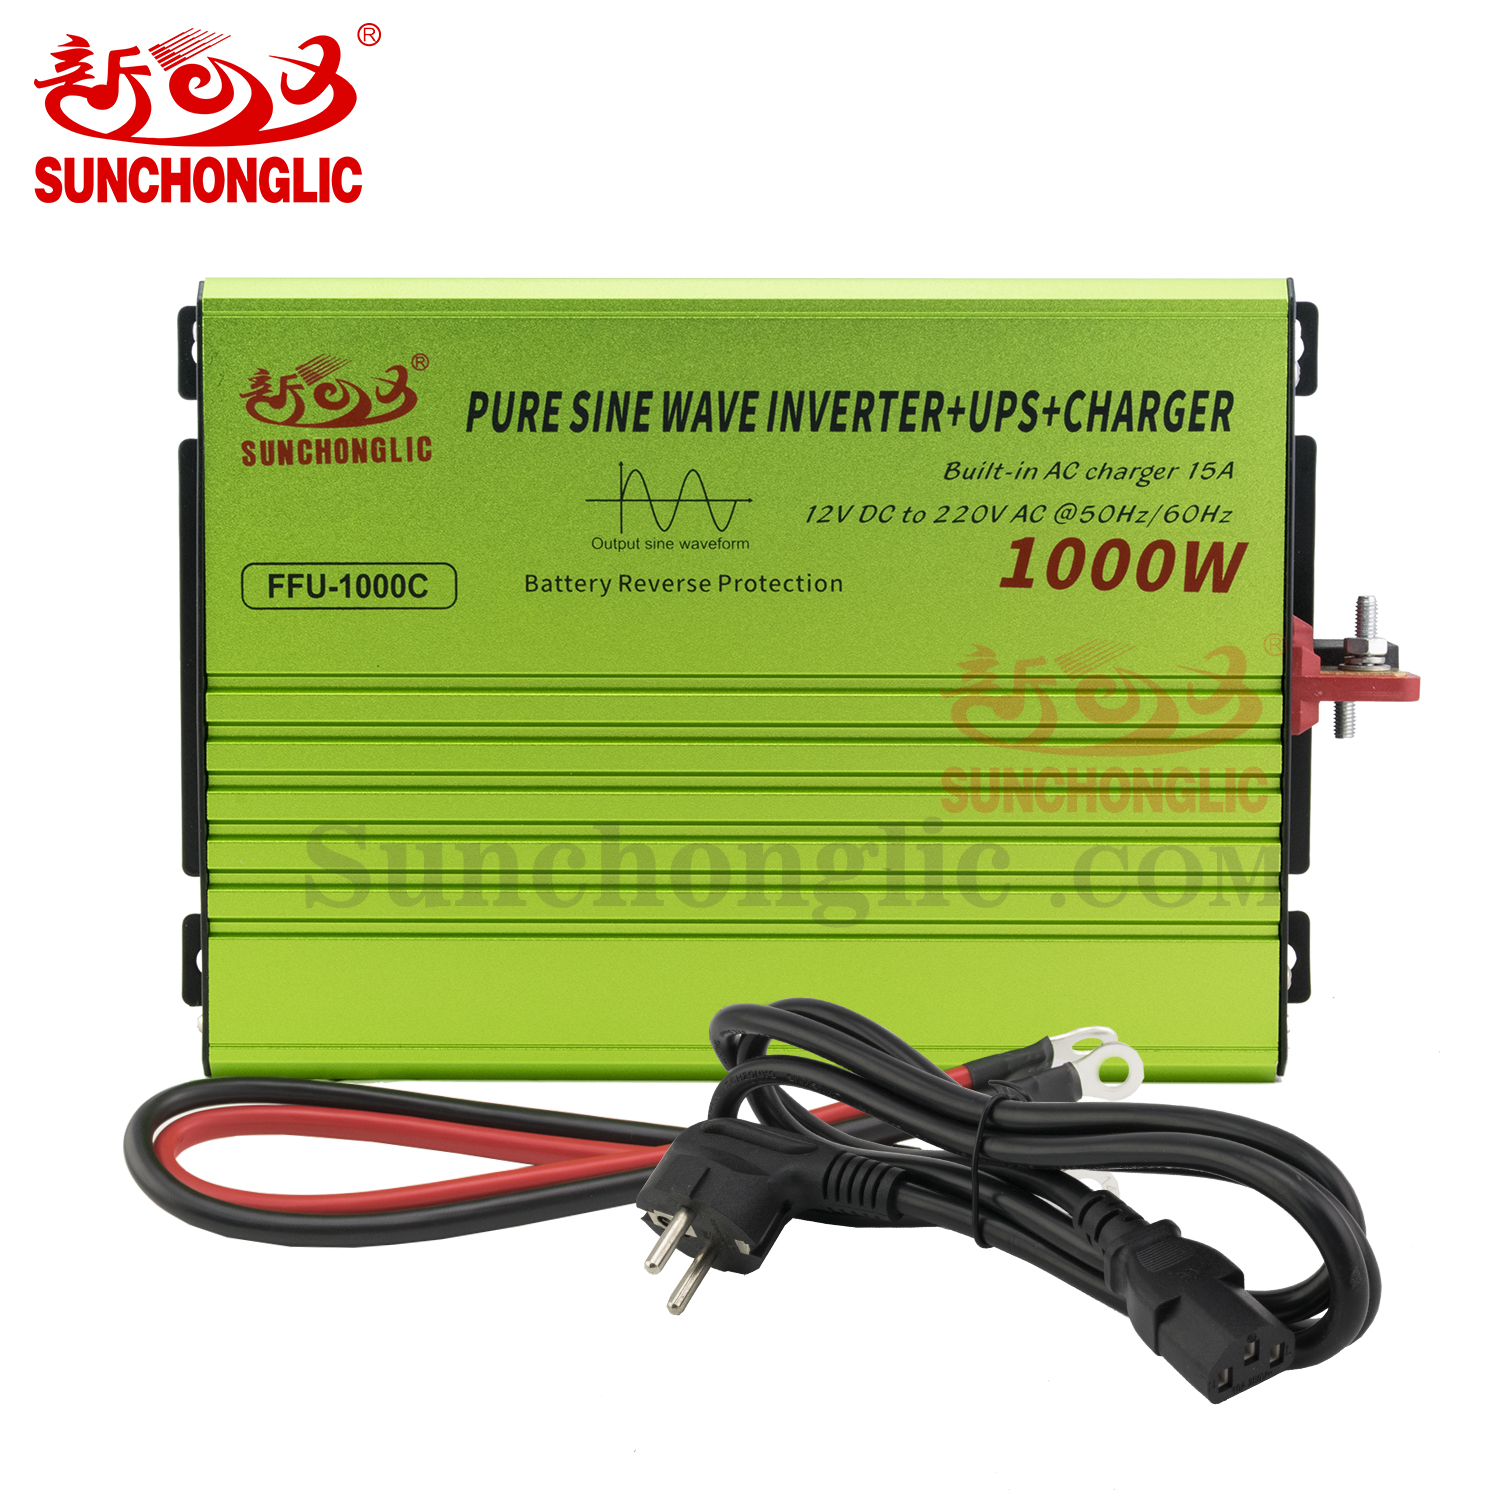 FFU-1000C - Pure Sine Wave Inverter - Foshan SunChongLic Electric 